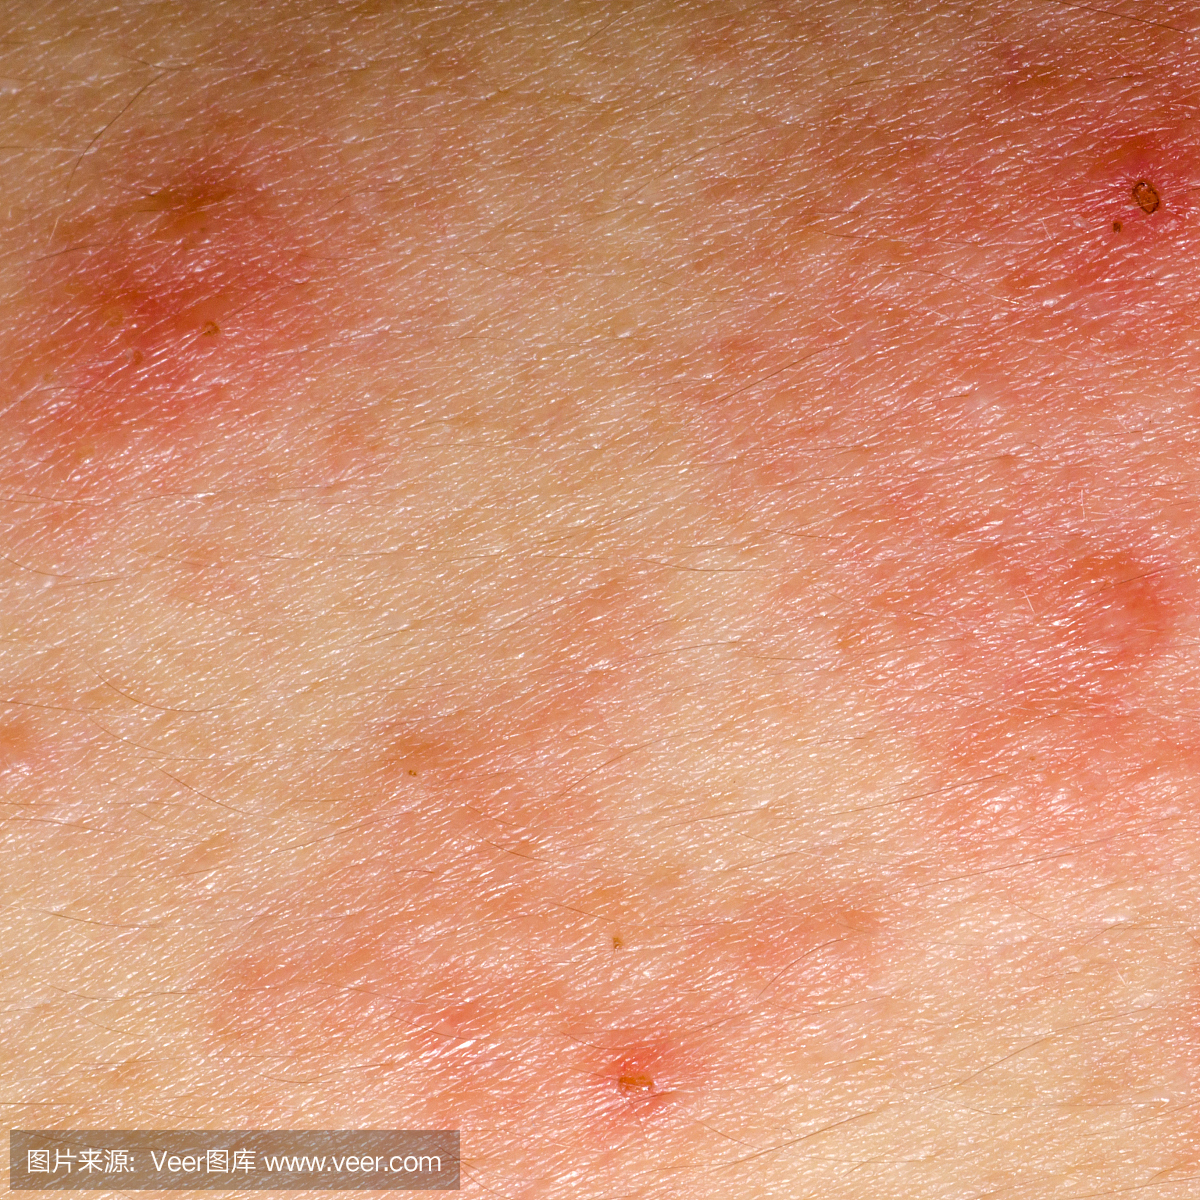 皮肤出现丘疹、红斑、小水泡，还剧烈瘙痒是怎么回事？_患者